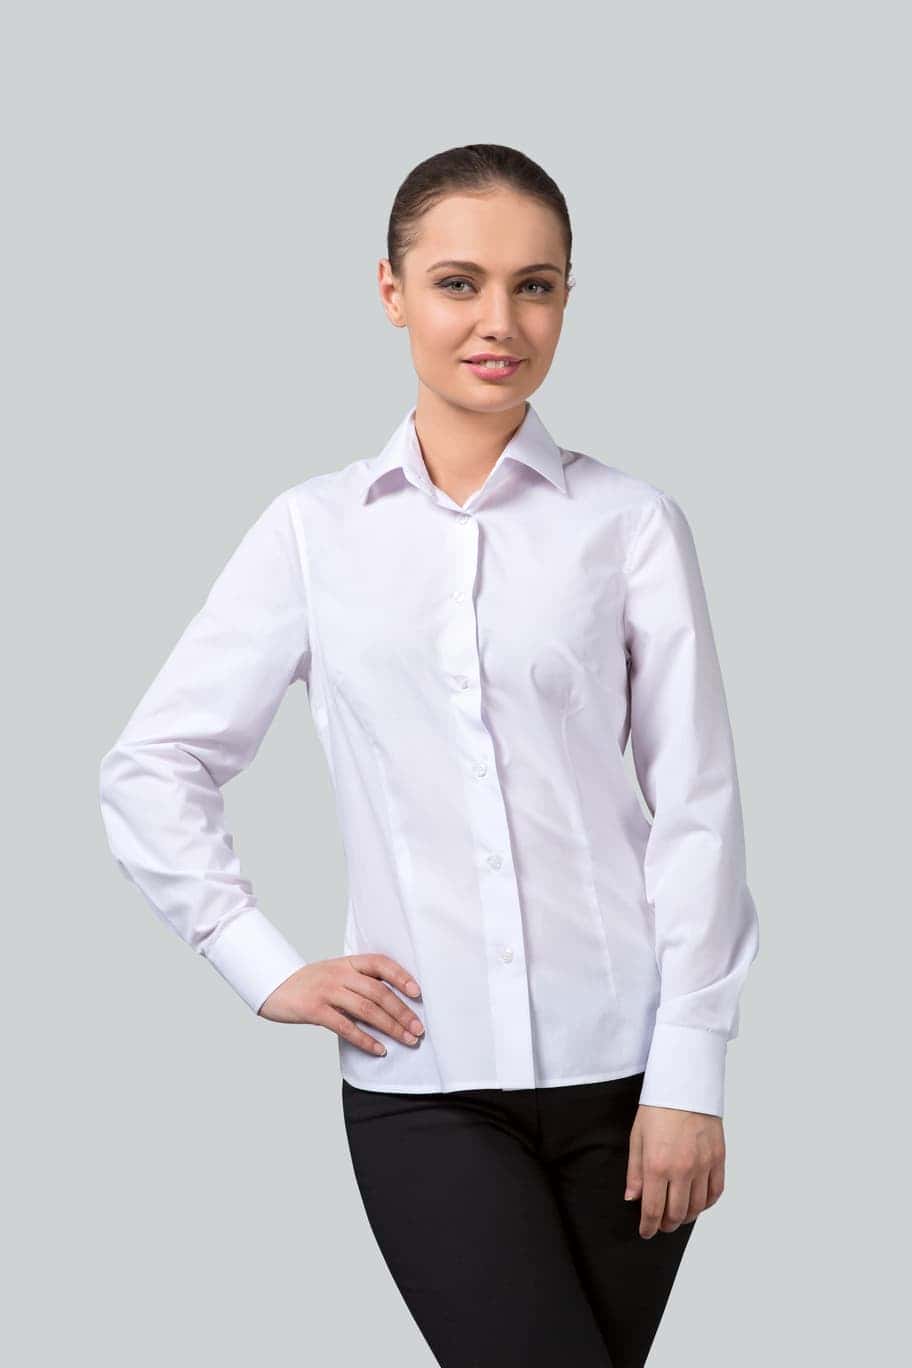 Модели белых блузок. Официантка в белой блузке. Официанта форма белая блузка. Блузка белая женская с логотипом c. Состав блузок